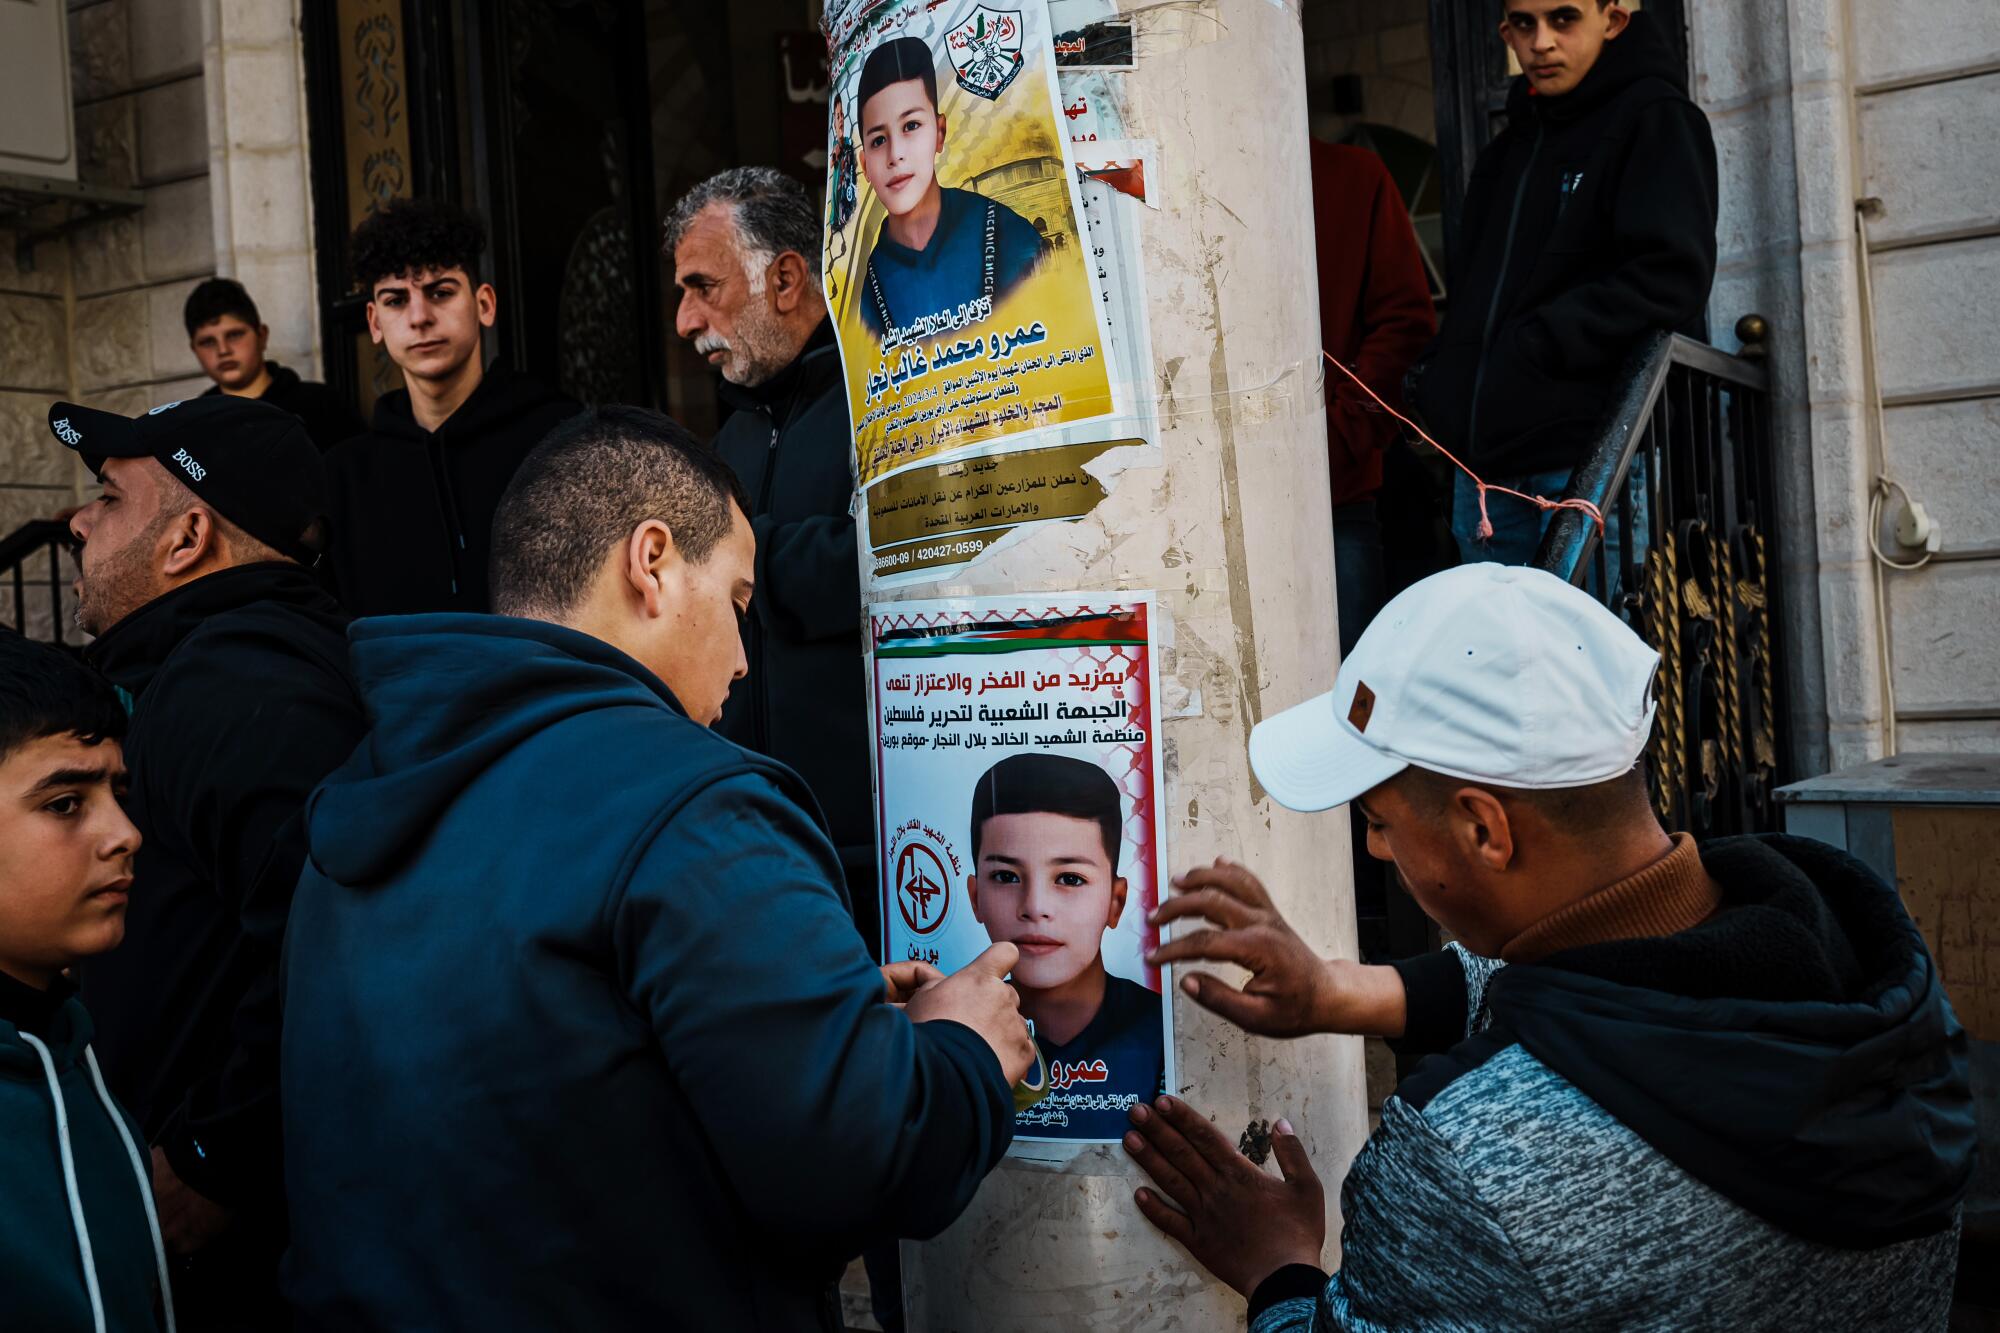 Des membres de la communauté aident à coller des affiches de martyrs à l'extérieur de la mosquée lors d'un cortège funéraire.